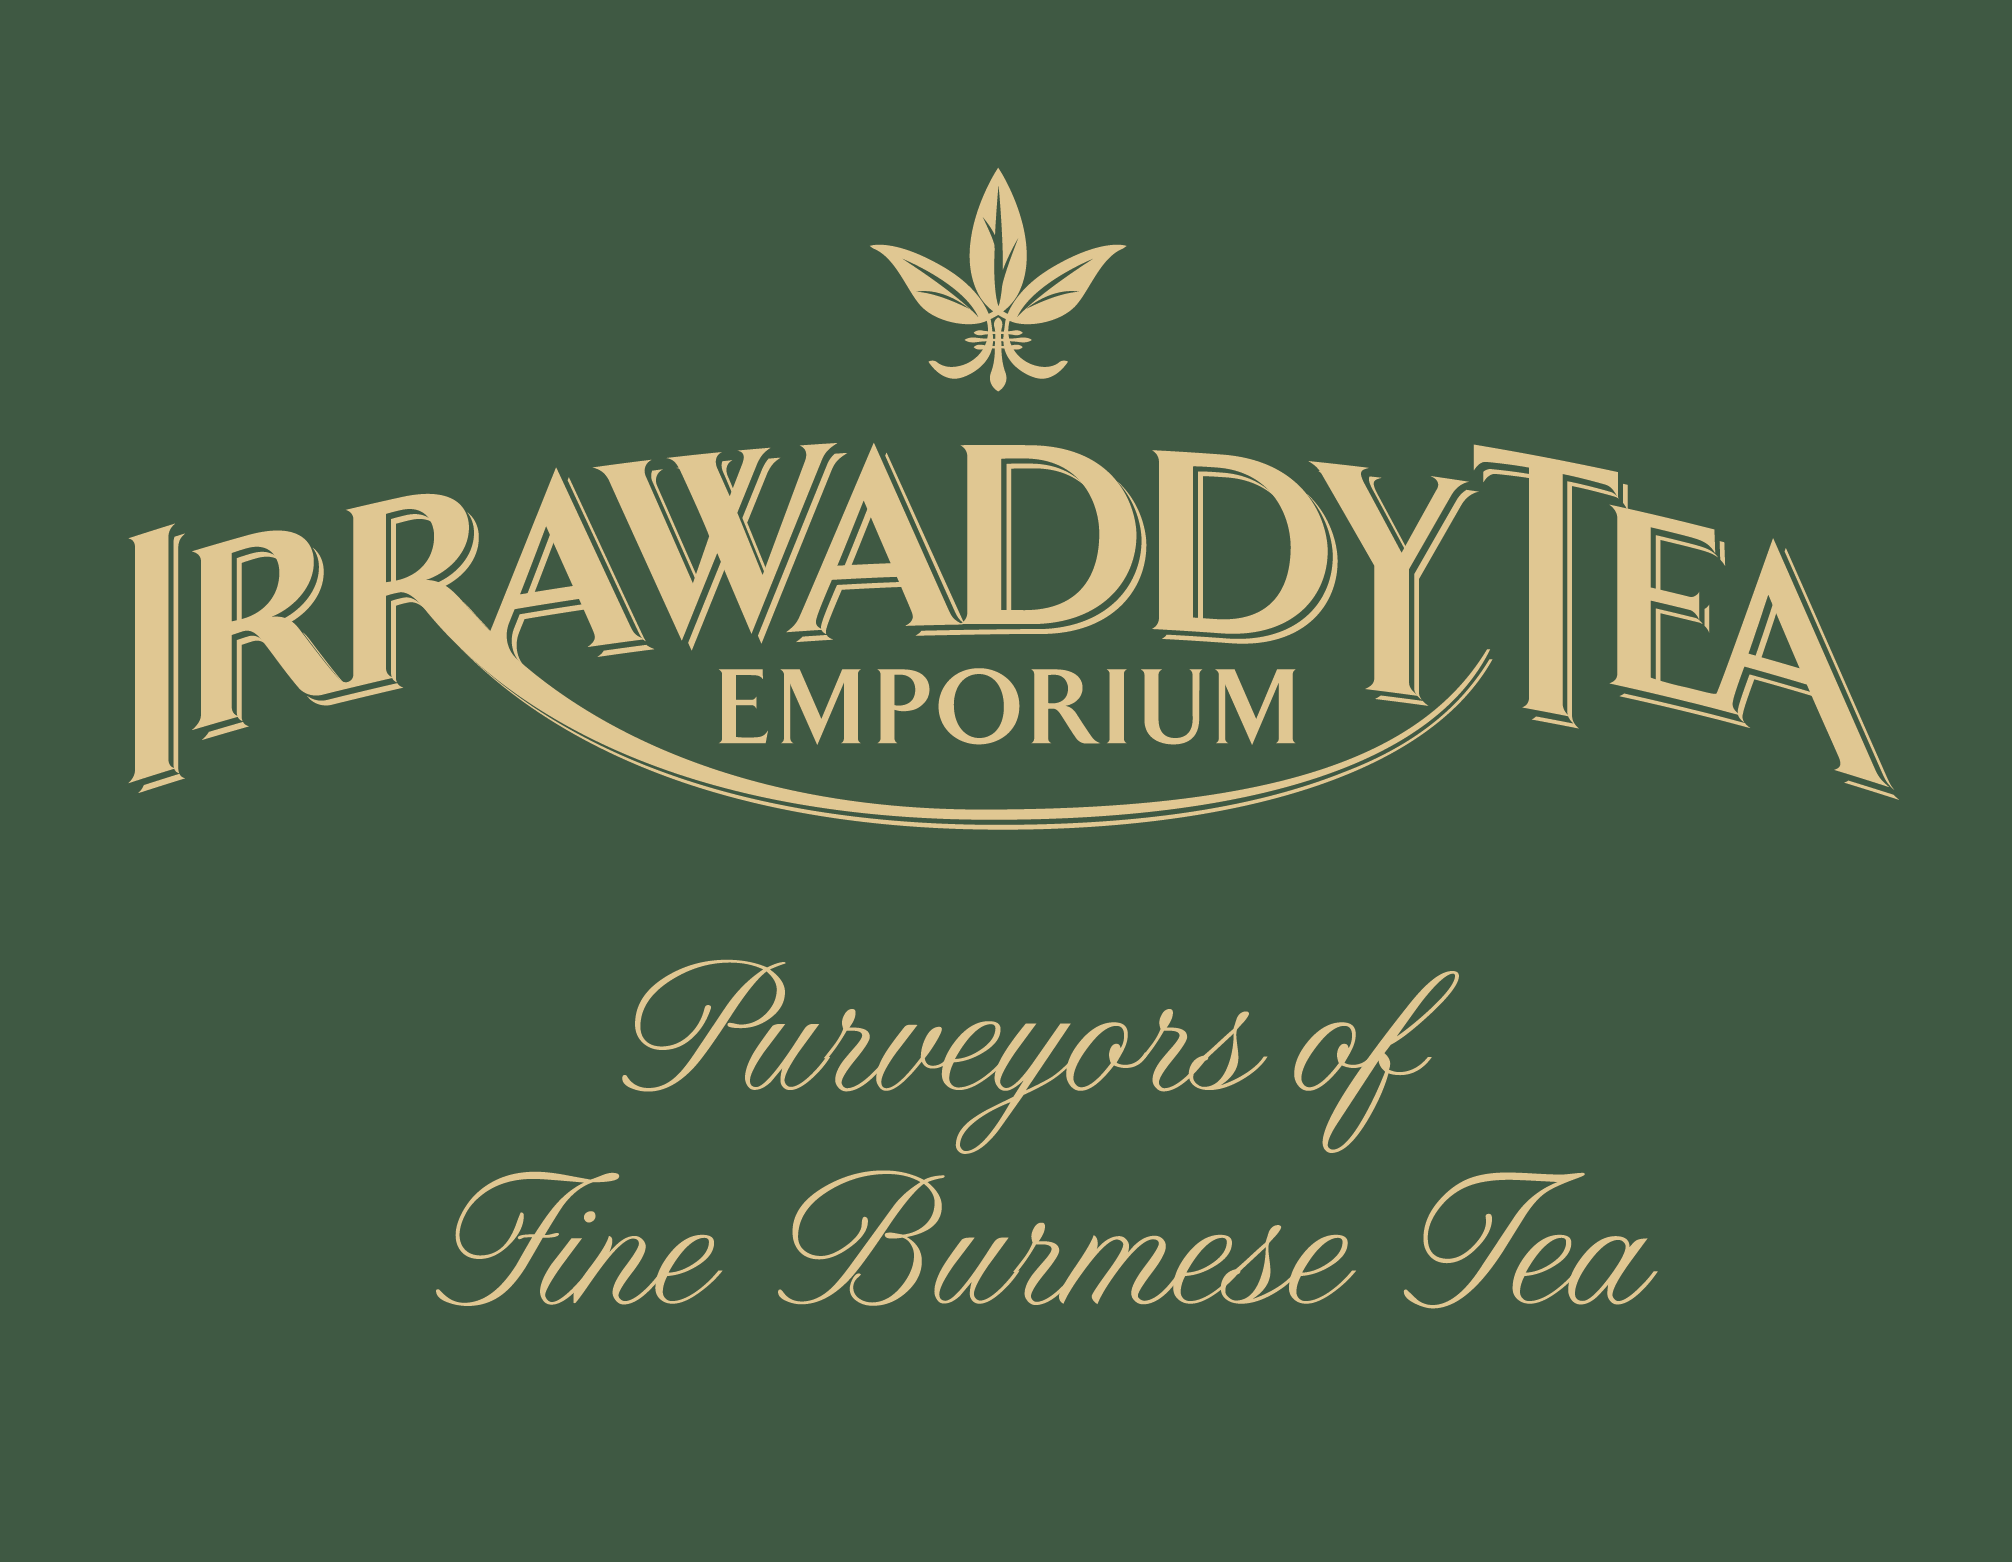 Irrawaddy Tea Emporium